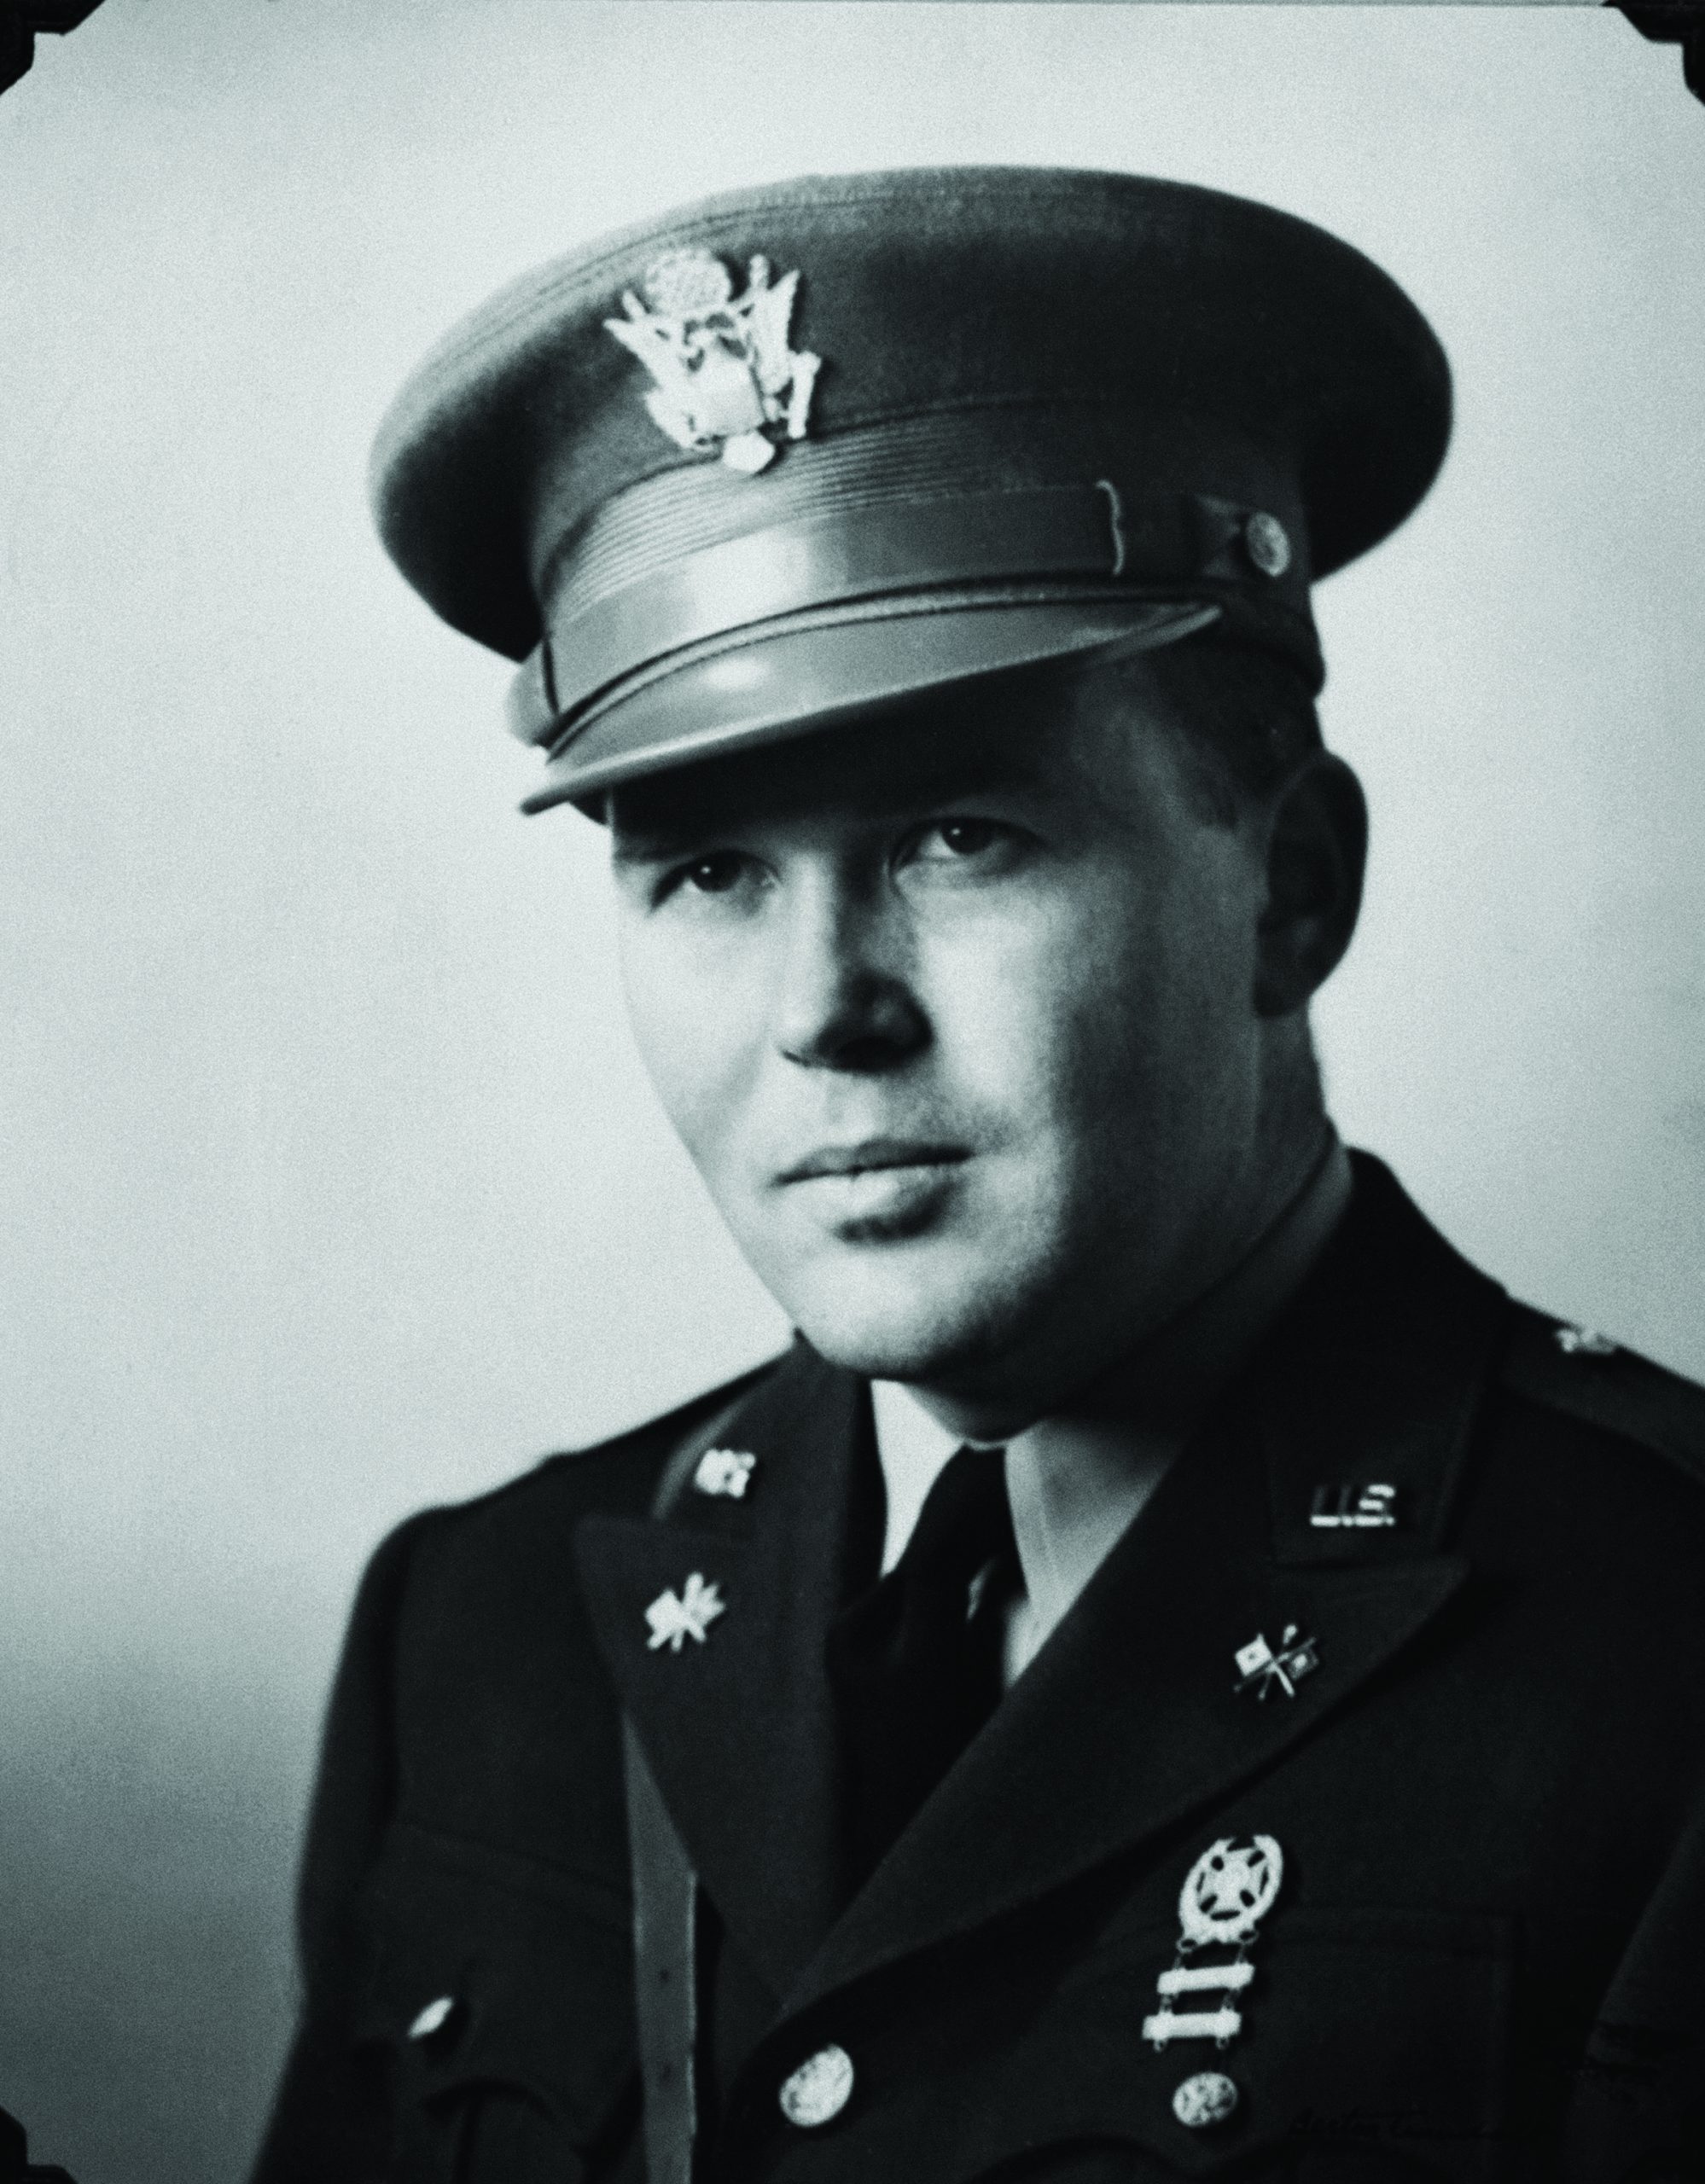 Photo of Bill Hewlett in Army dress uniform taken in 1943.